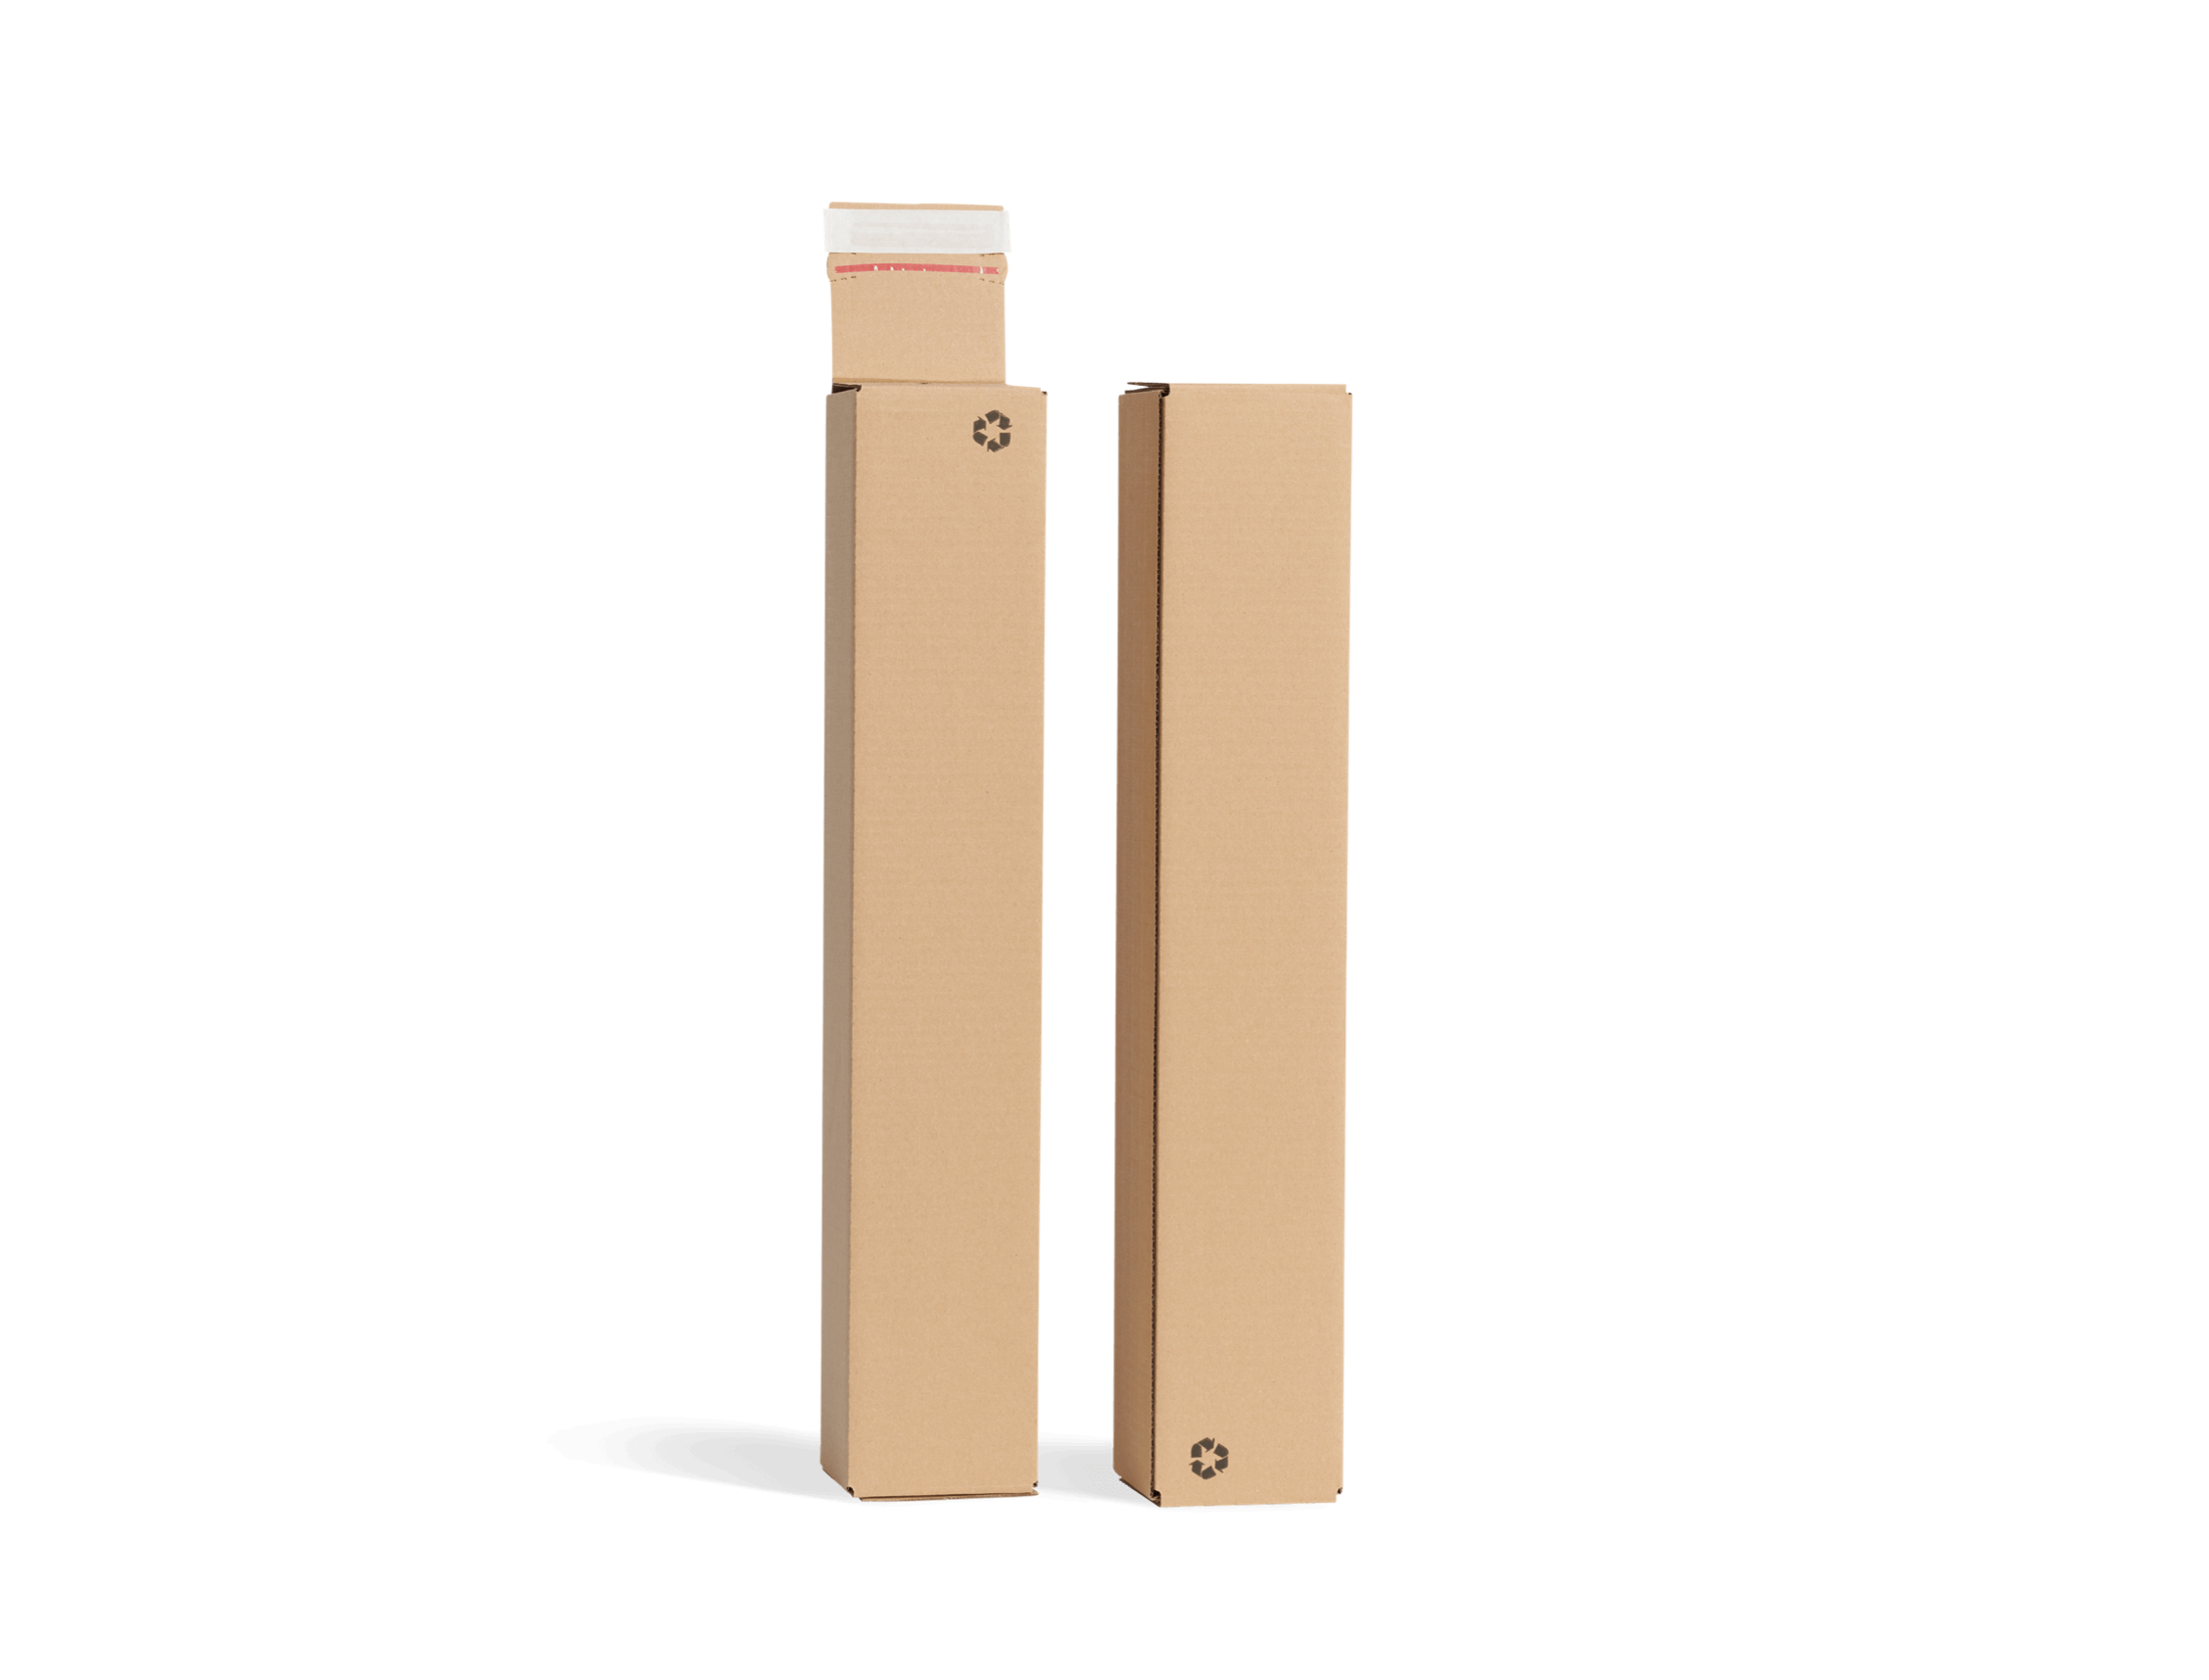 Cardboard tube box